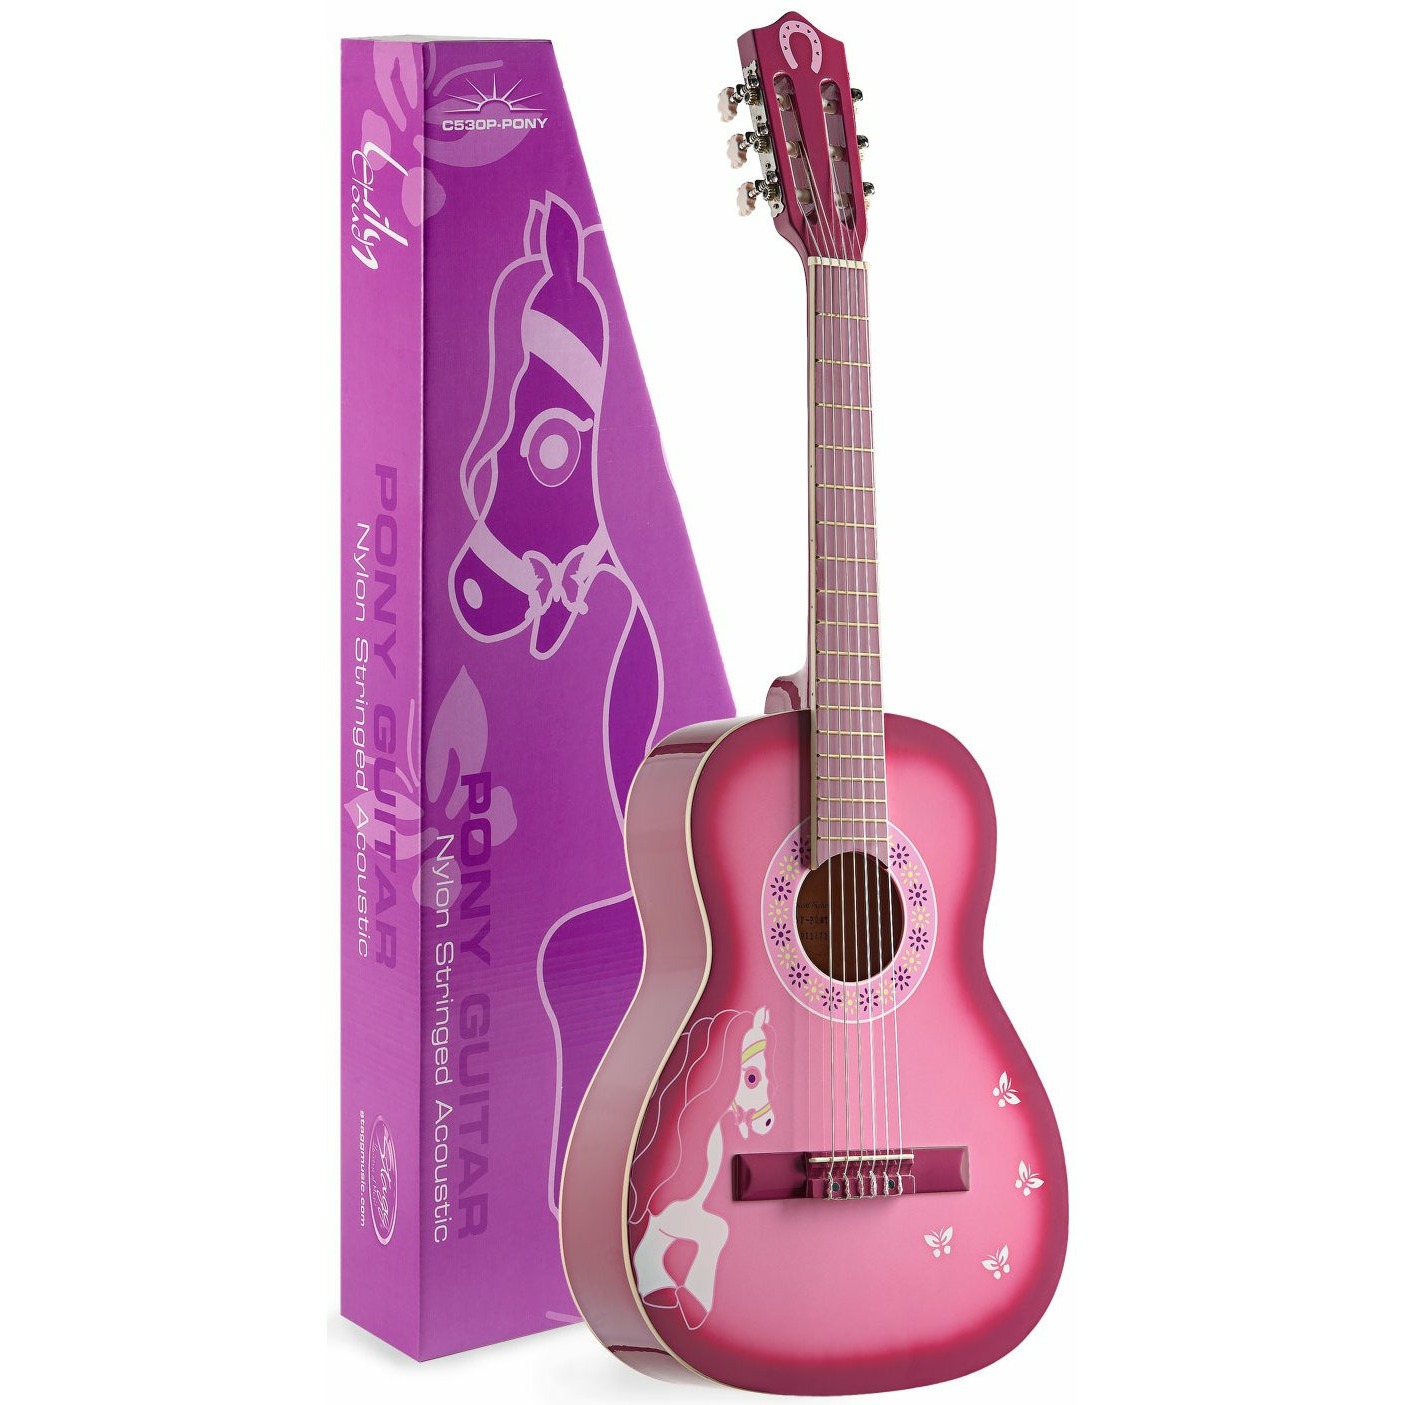 Гитара для начинающих детская. Stagg c530b Pony. Stagg c510 1/2 гитара. Stagg детская гитара. Классическая гитара Stagg.